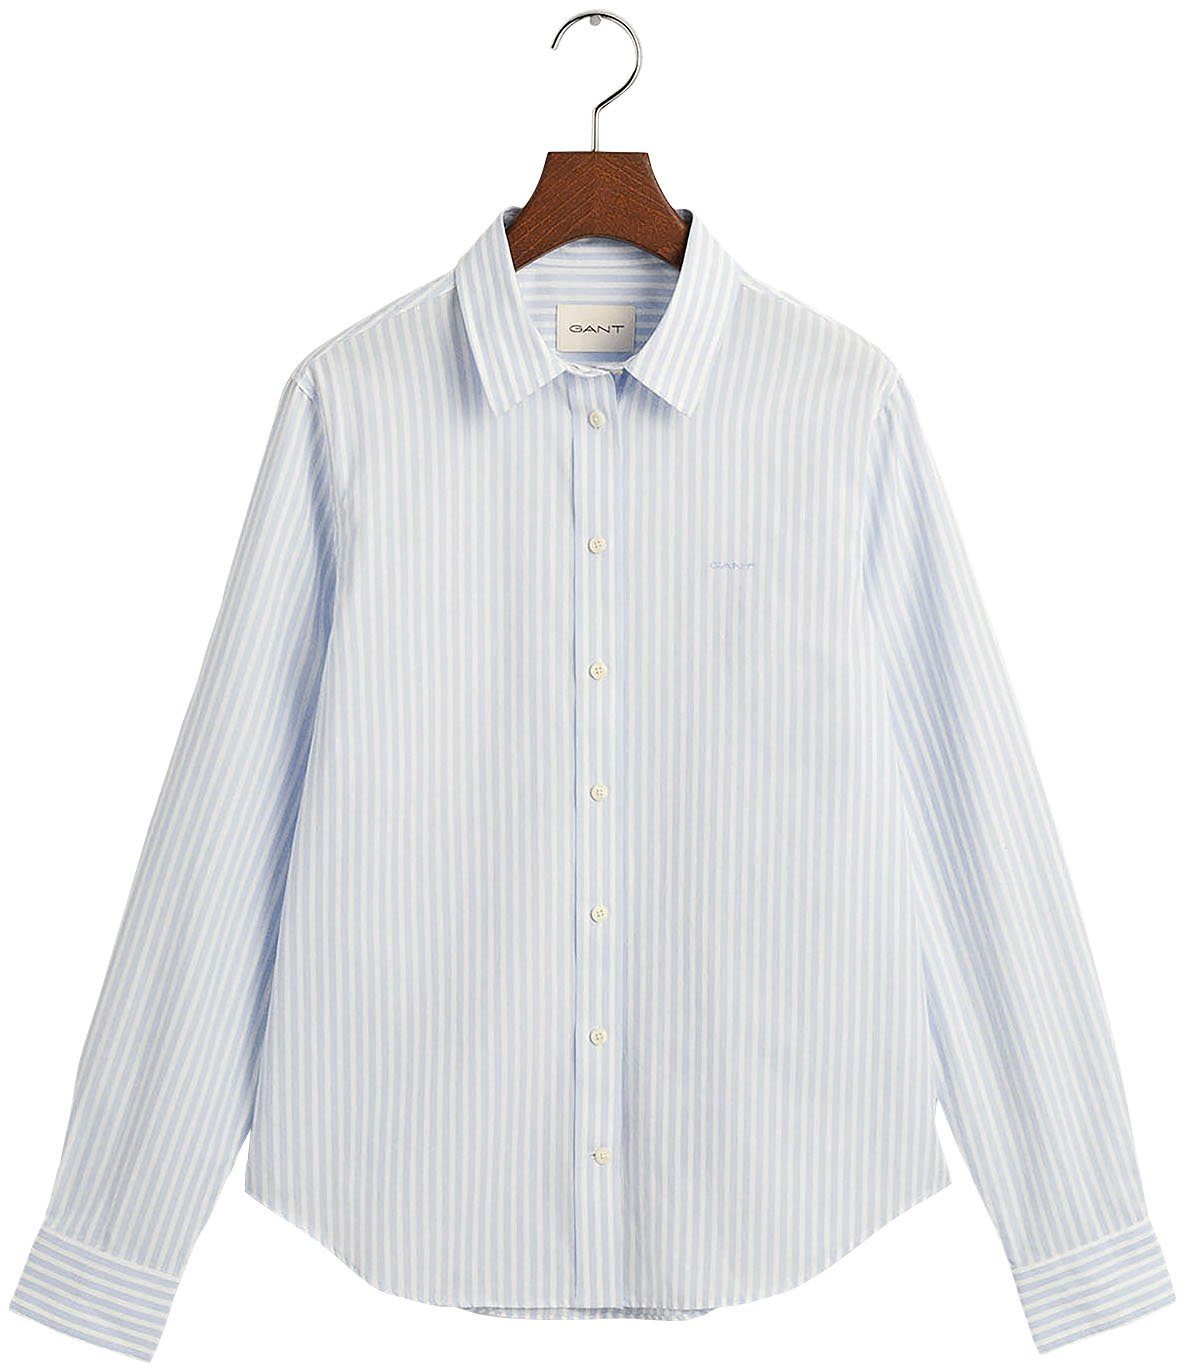 Gant Hemdbluse REG POPLIN STRIPED SHIRT mit einer kleinen Logostickerei auf der Brust Light blue